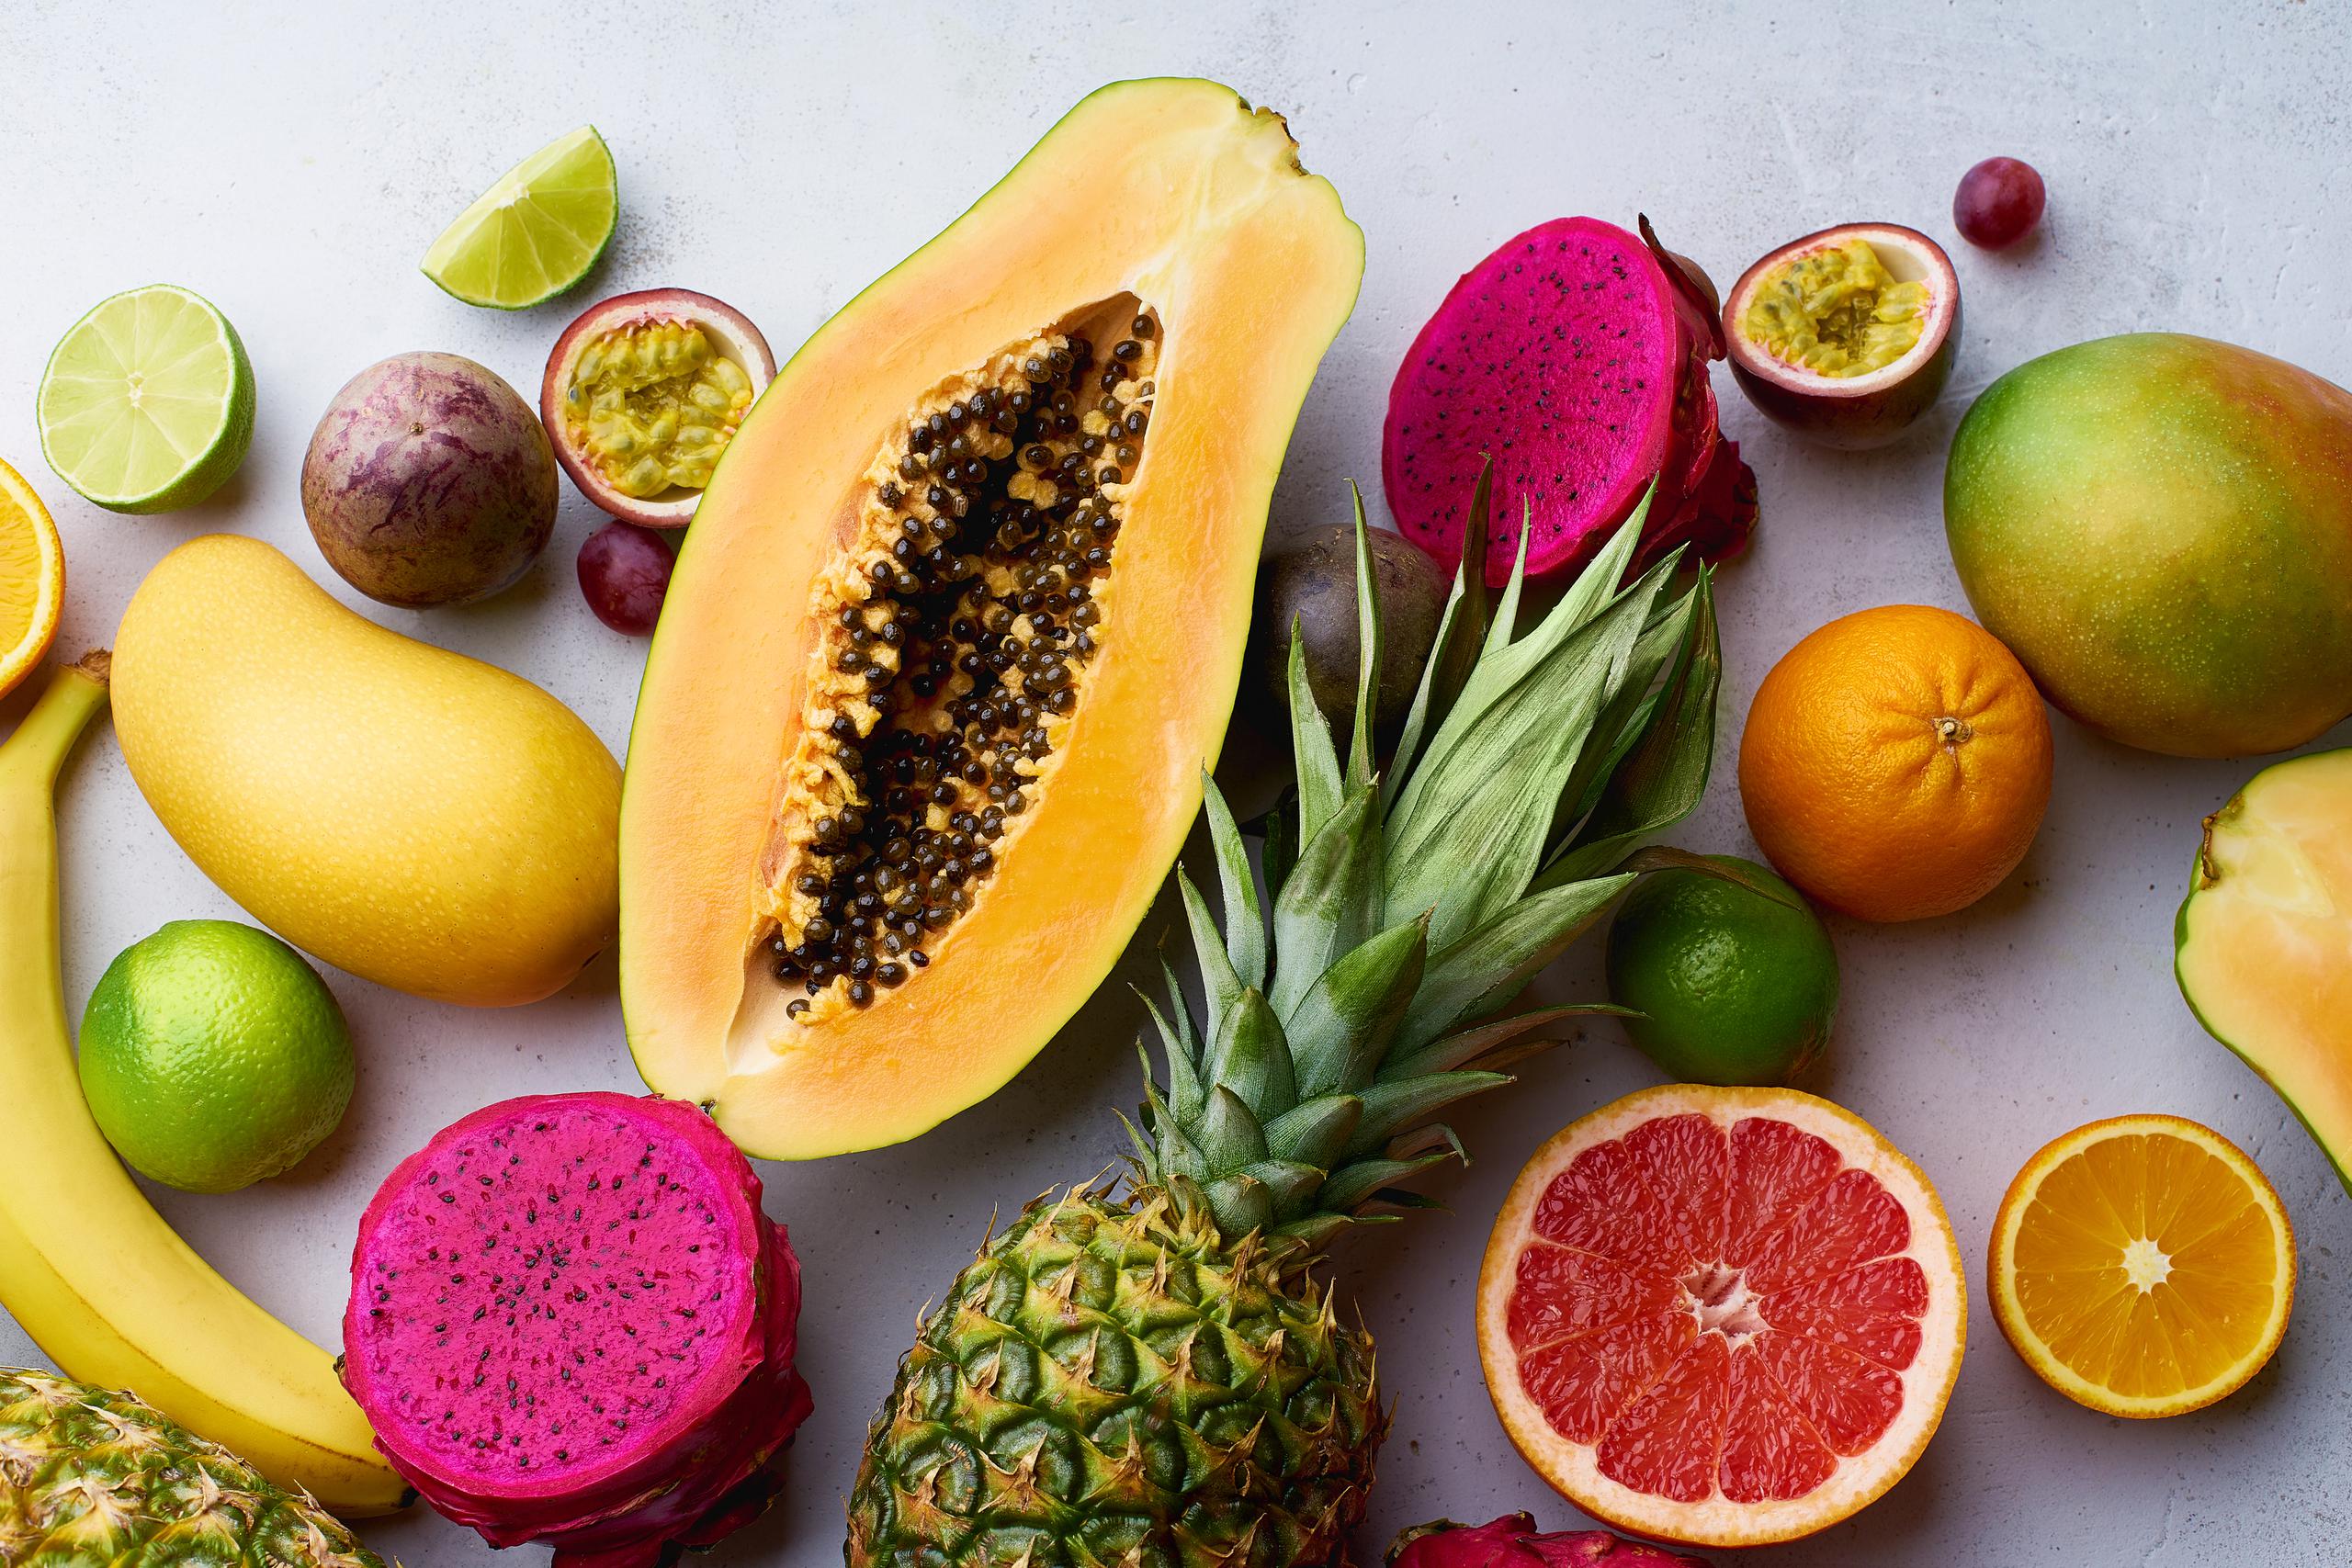 Las frutas son ricas en fibra, reducen los niveles de colesterol, ayudan a evitar los problemas gastrointestinales, rejuveneciendo el sistema digestivo y fomentan la batalla contra la obesidad.